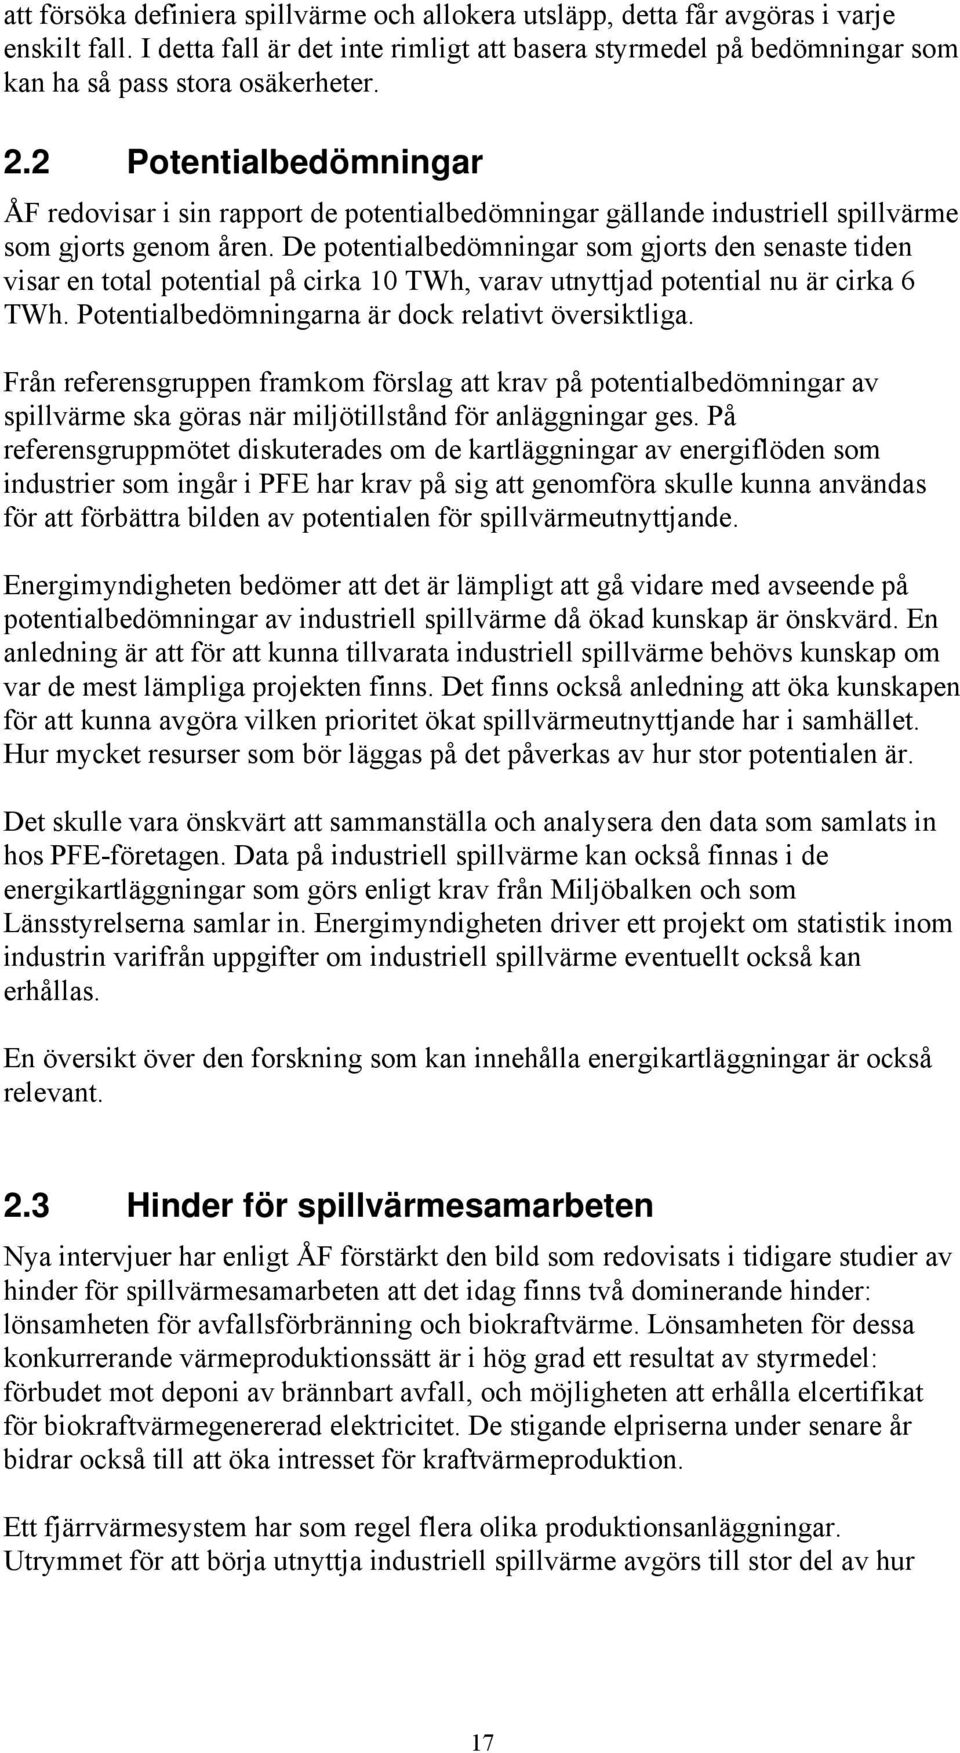 2 Potentialbedömningar ÅF redovisar i sin rapport de potentialbedömningar gällande industriell spillvärme som gjorts genom åren.